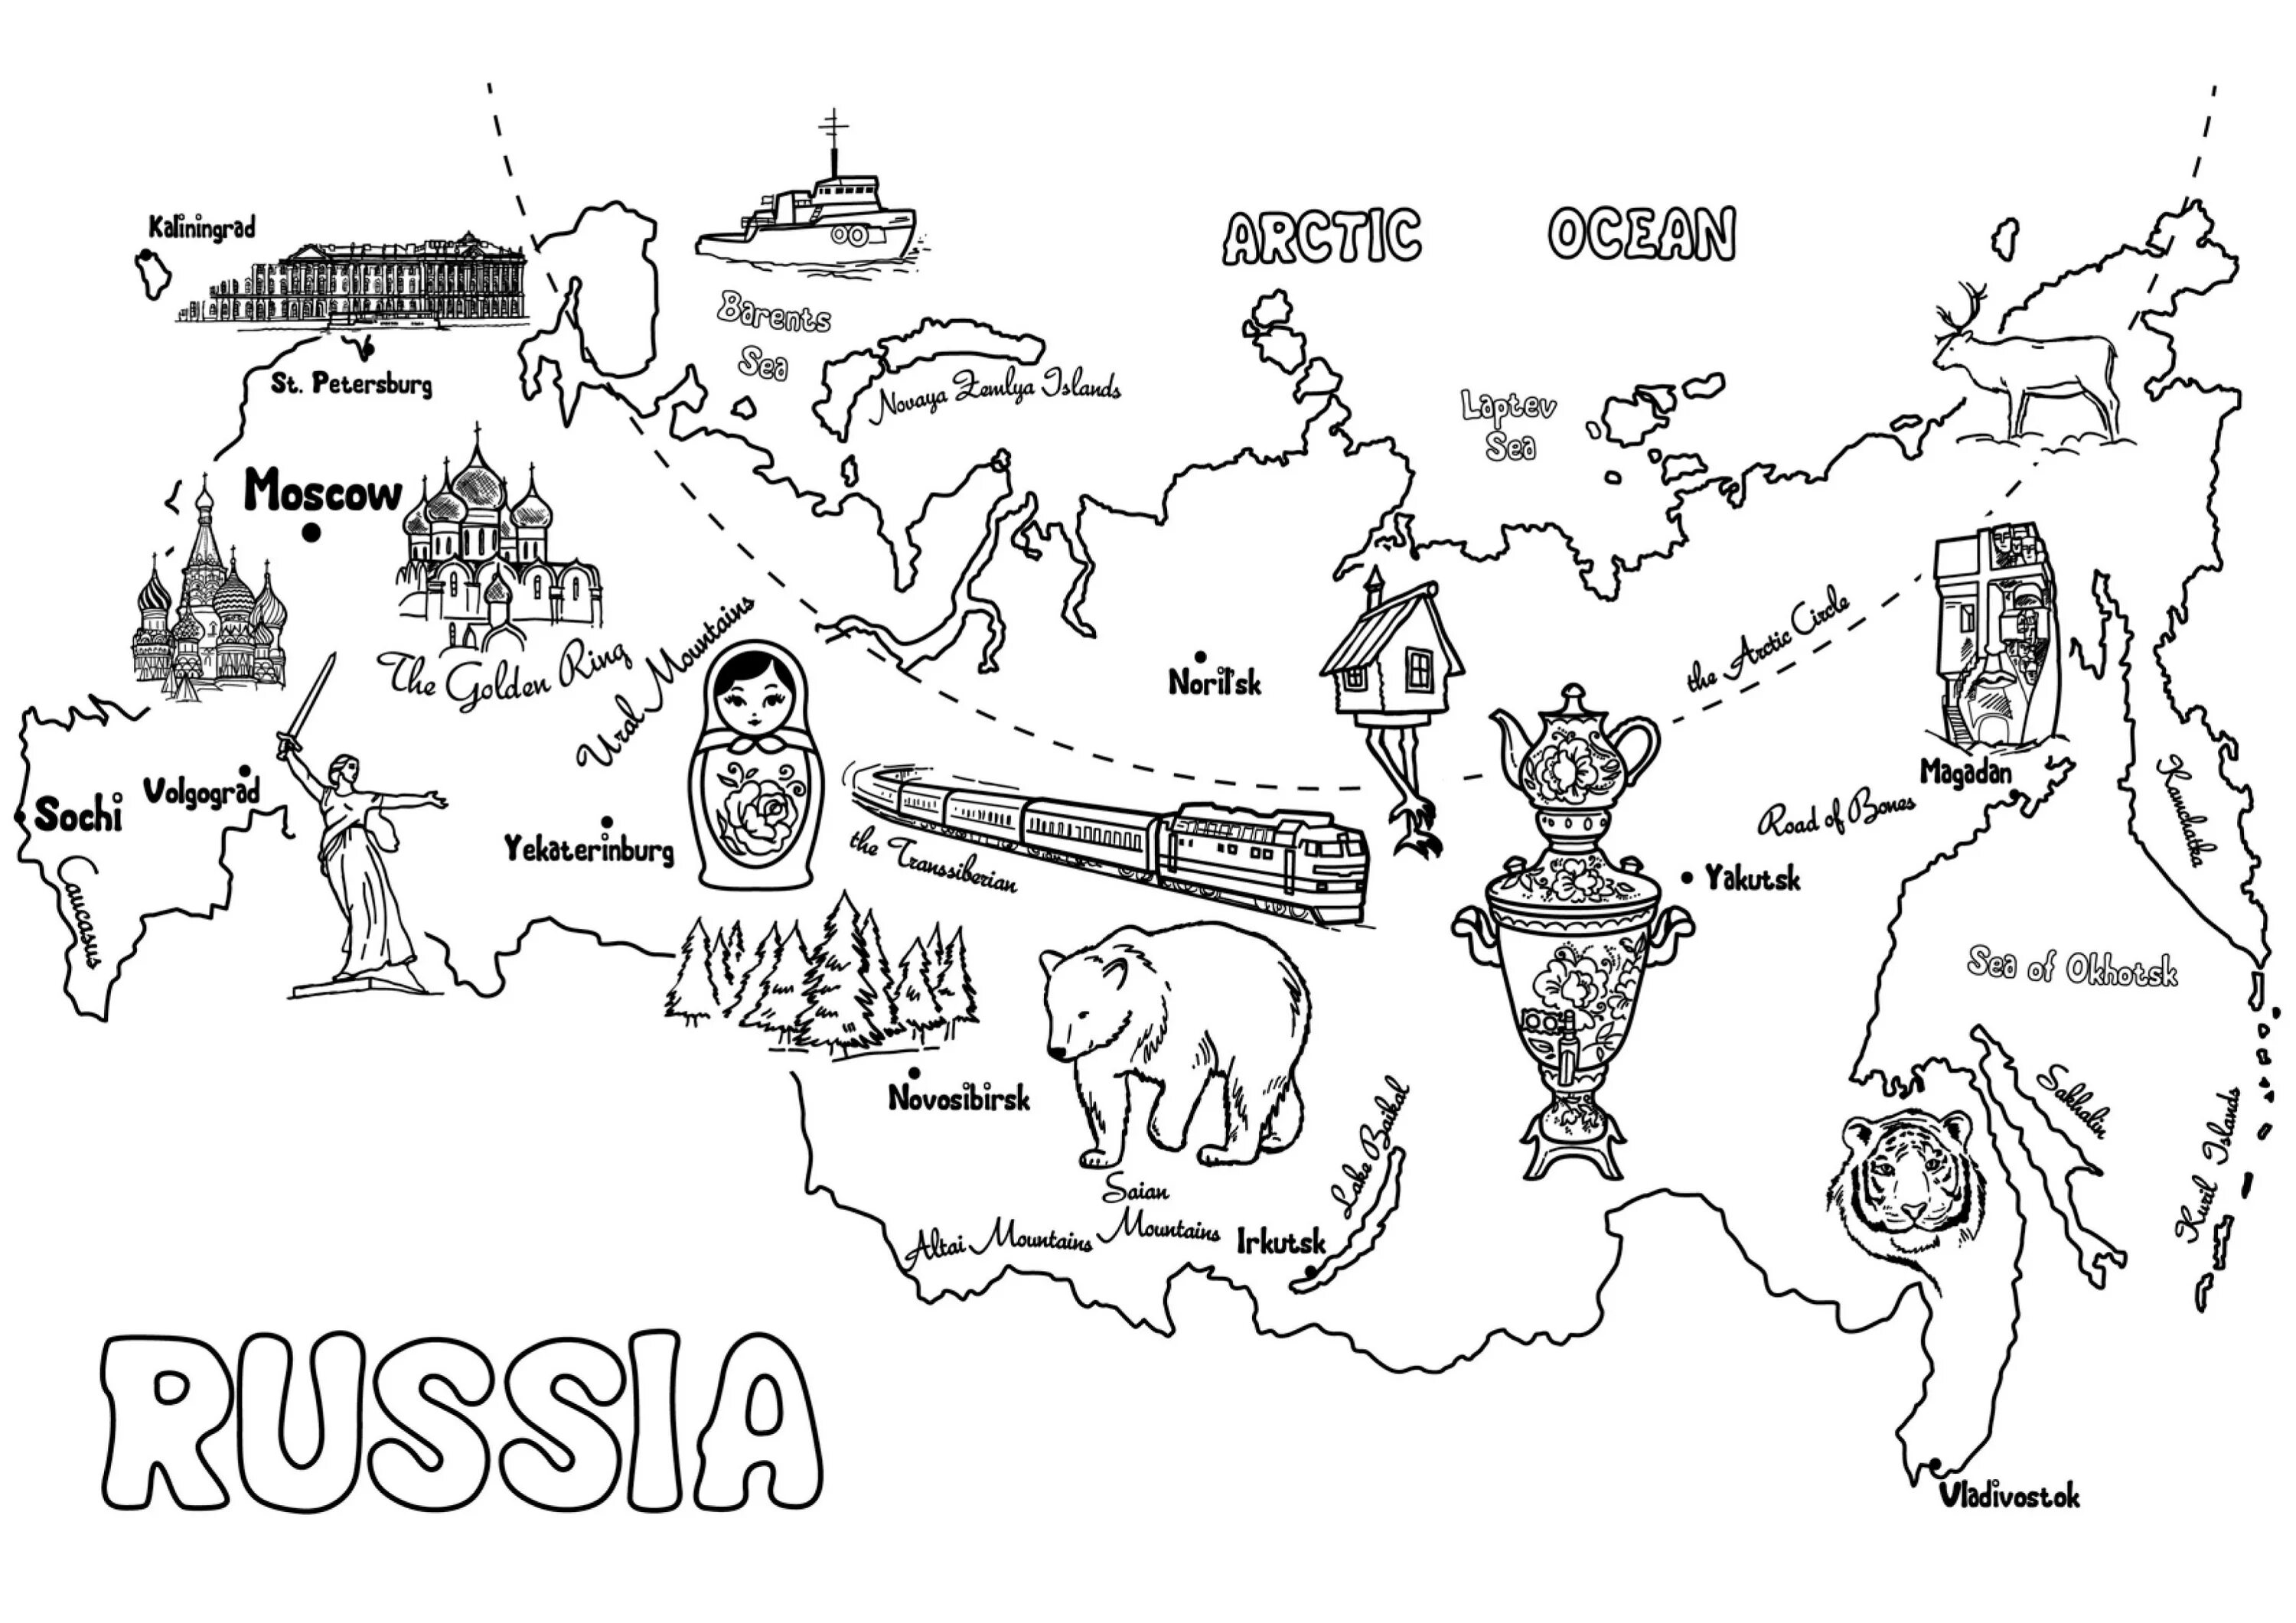 Карта россии для детей дошкольного возраста #20